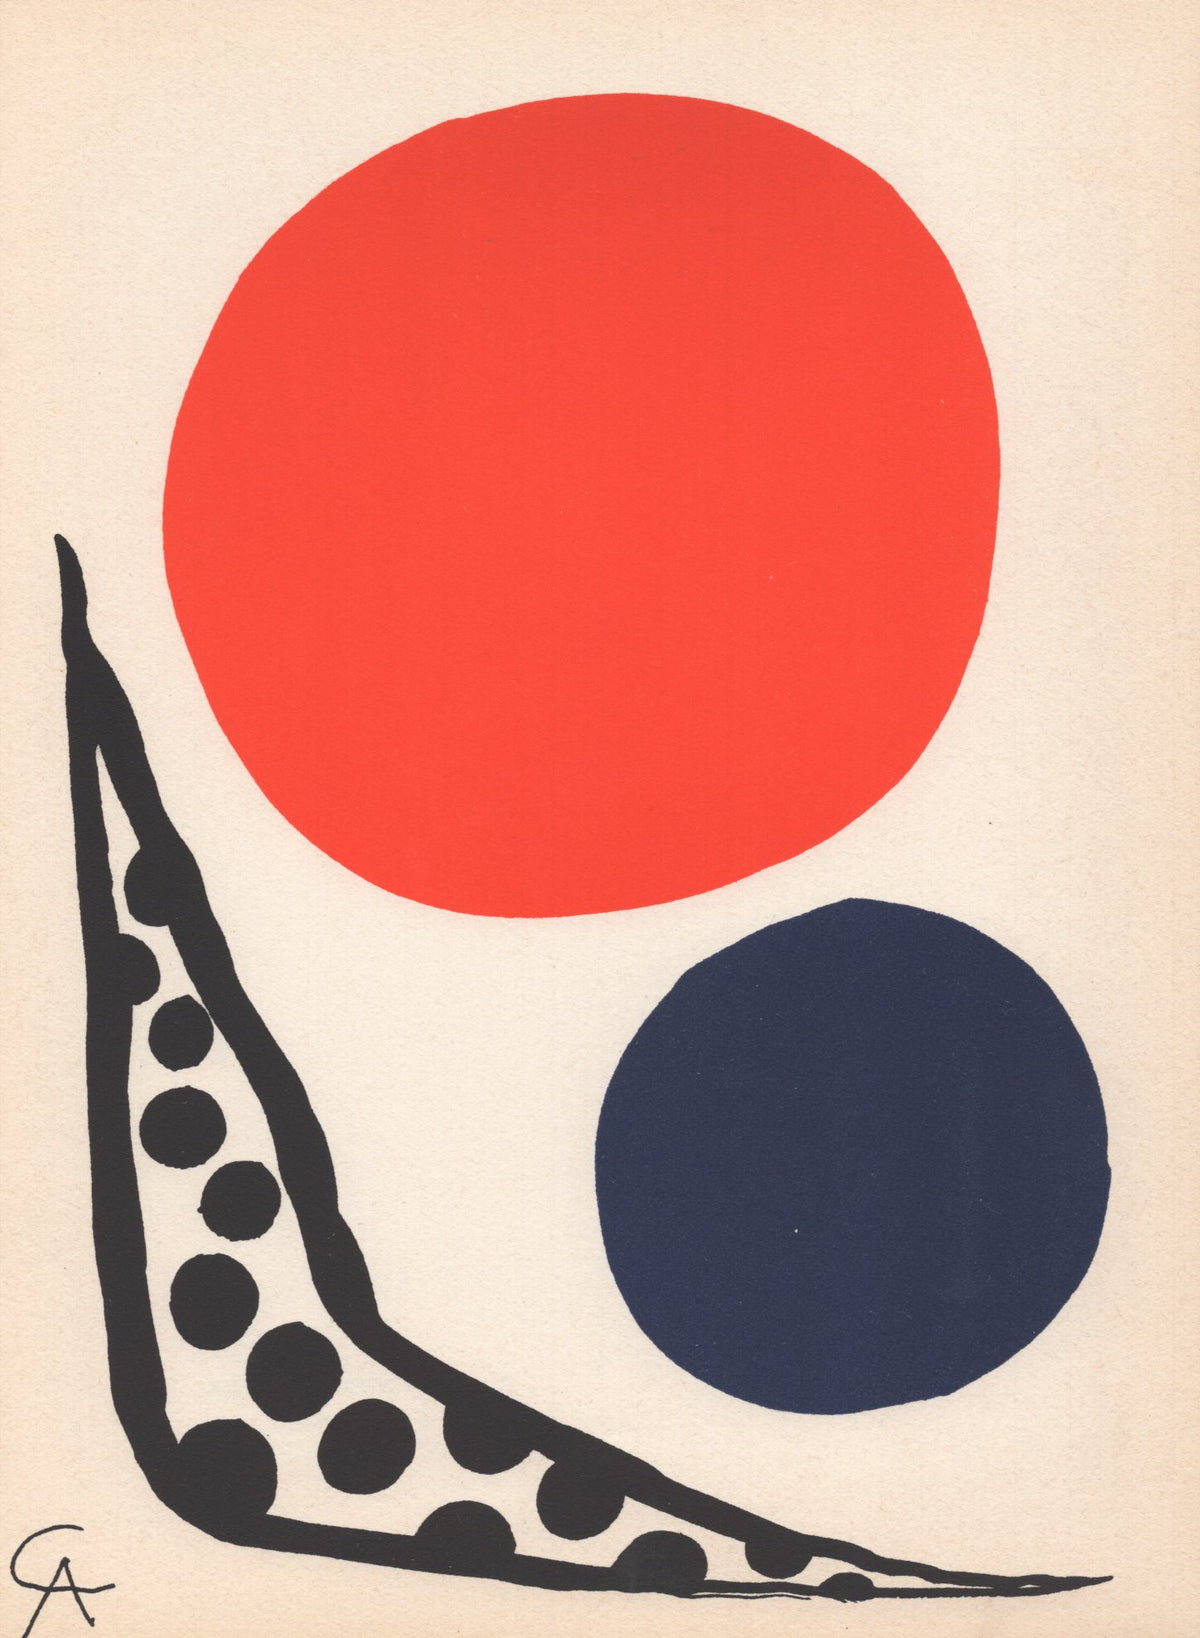 Alexander Calder - &quot;Composition&quot; - Mourlot Press 1964 Lithograph - 7.5 x 10&quot;